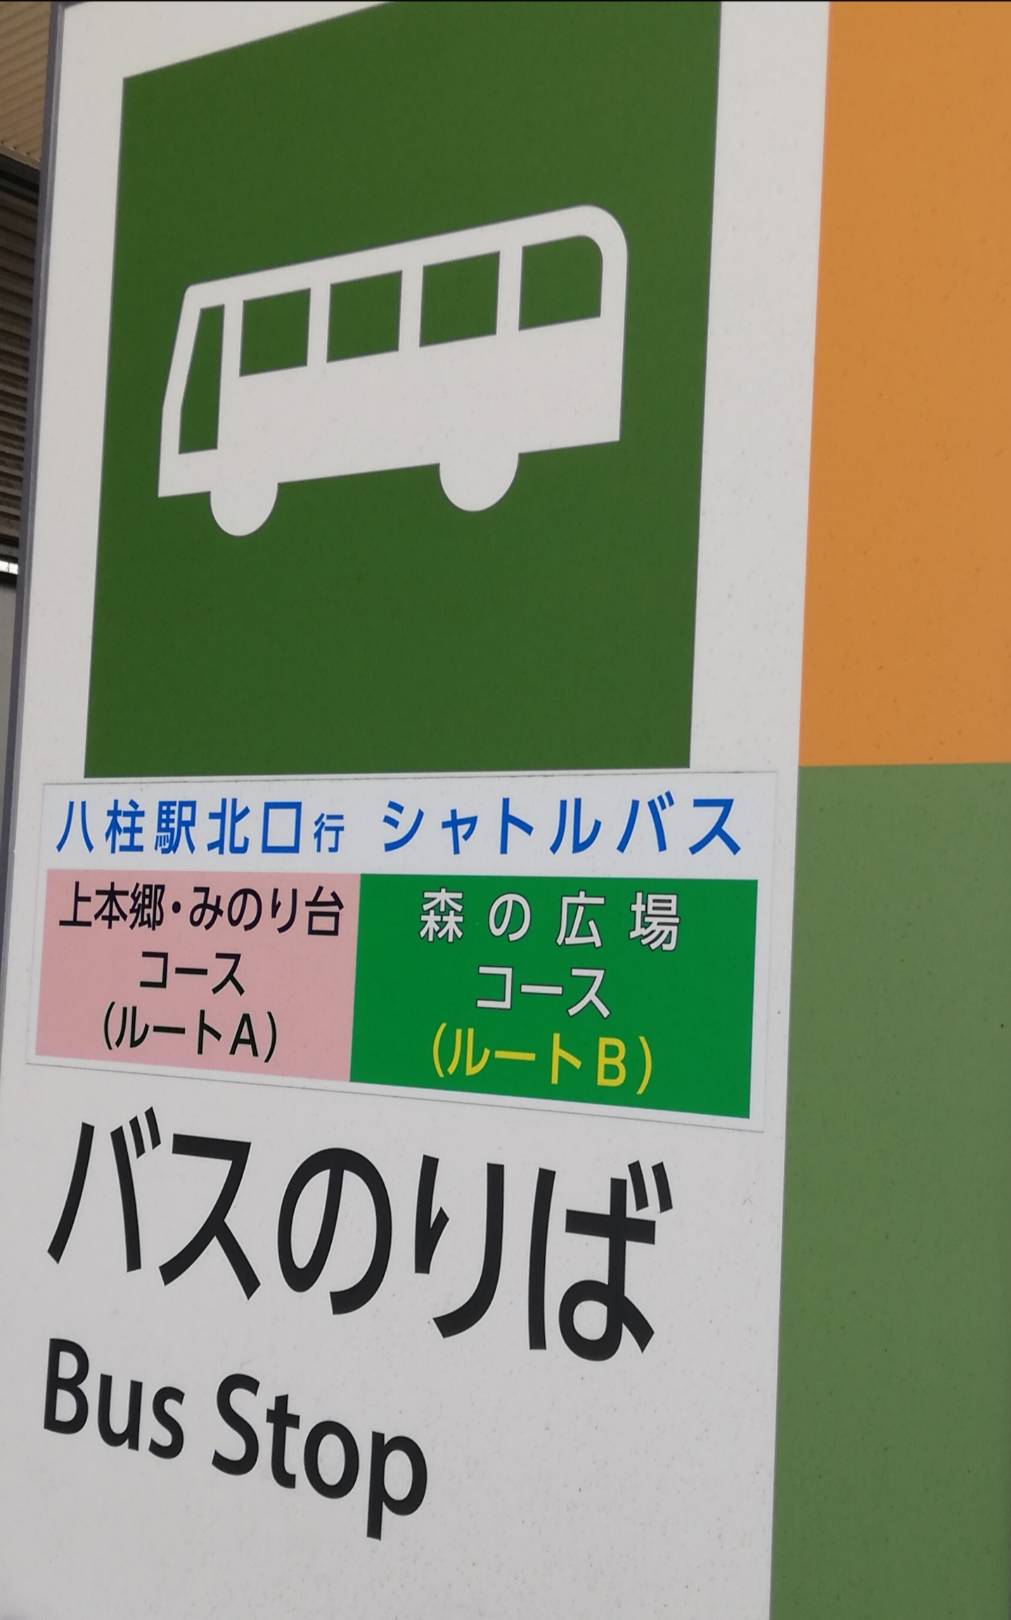 松戸市立総合医療センターシャトルバス増便